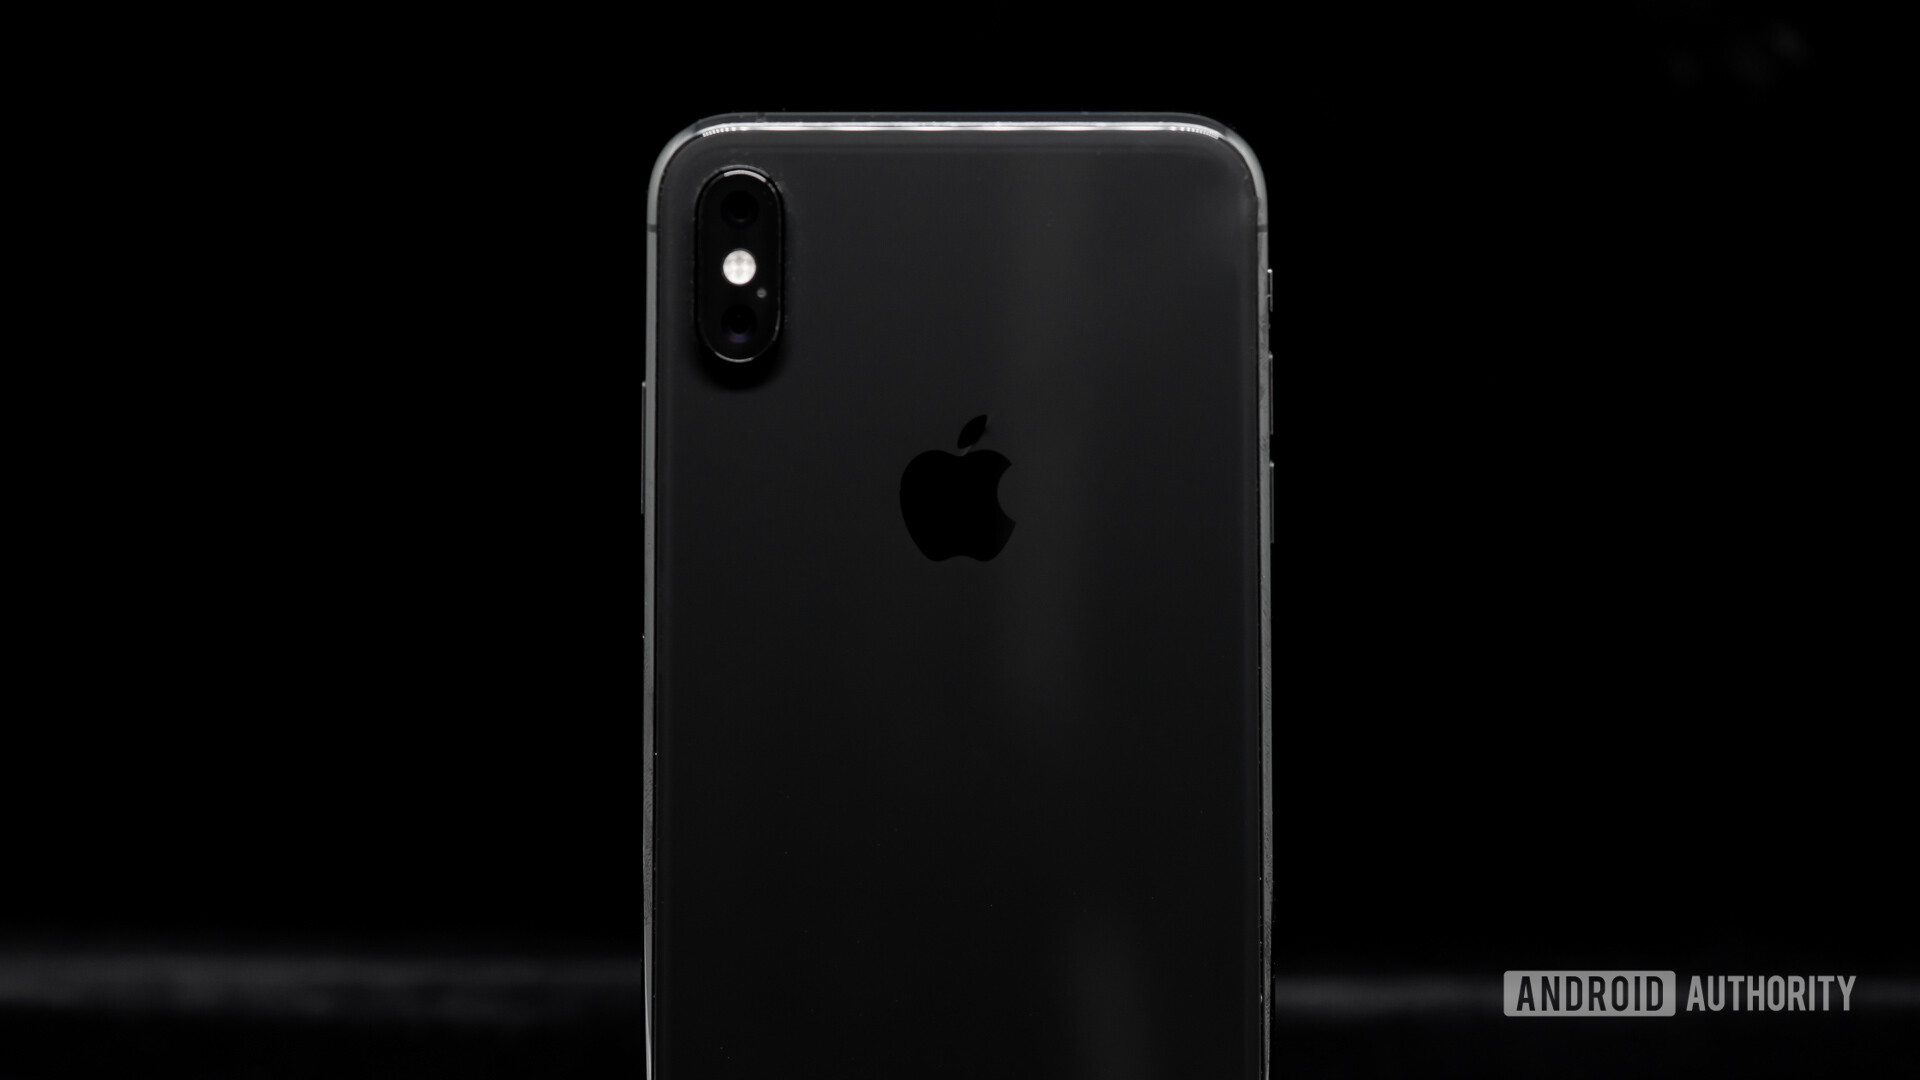 Apple iPhone XS Max - iPhone 11 leak